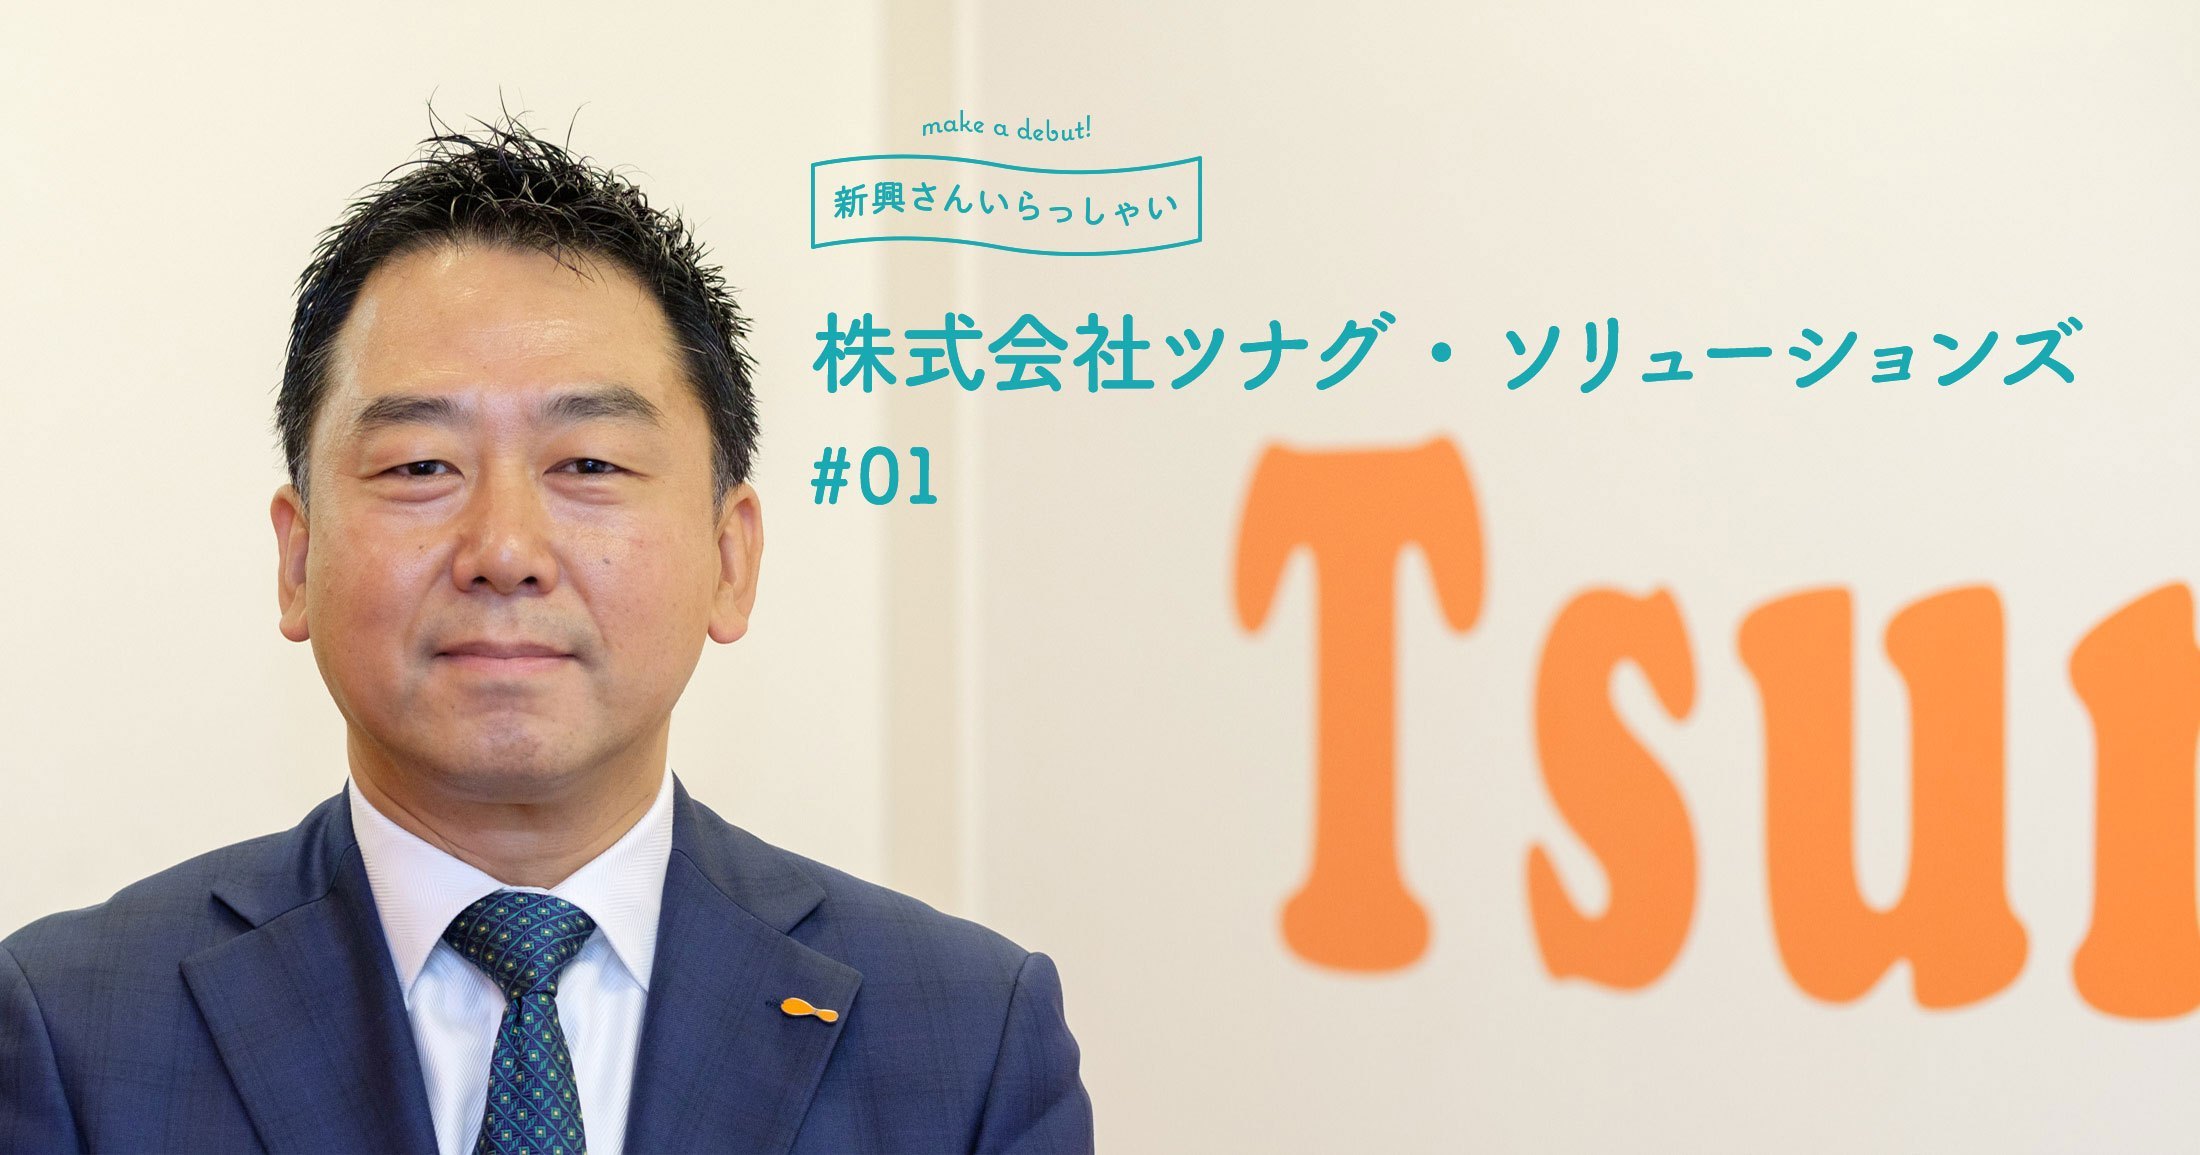 ツナグ ソリューションズ 日本中のあらゆるパート アルバイト求人情報のデータベース Tsuna Gram ツナグラム Vol 1 Signifiant Style